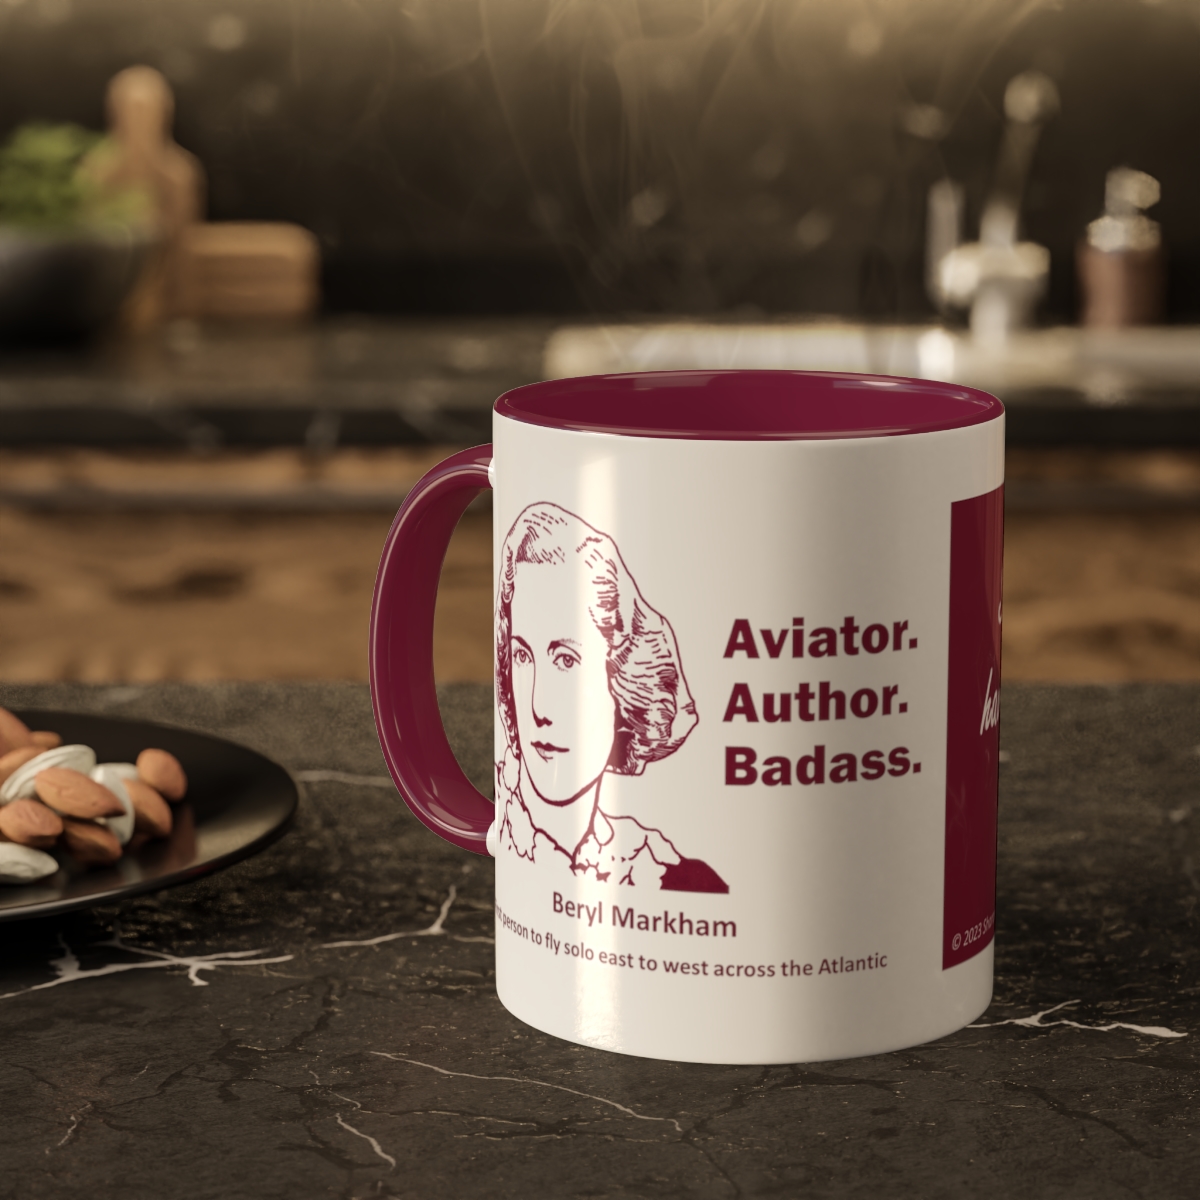 Beryl Markham Mug "Aviator. Author. Badass." product thumbnail image